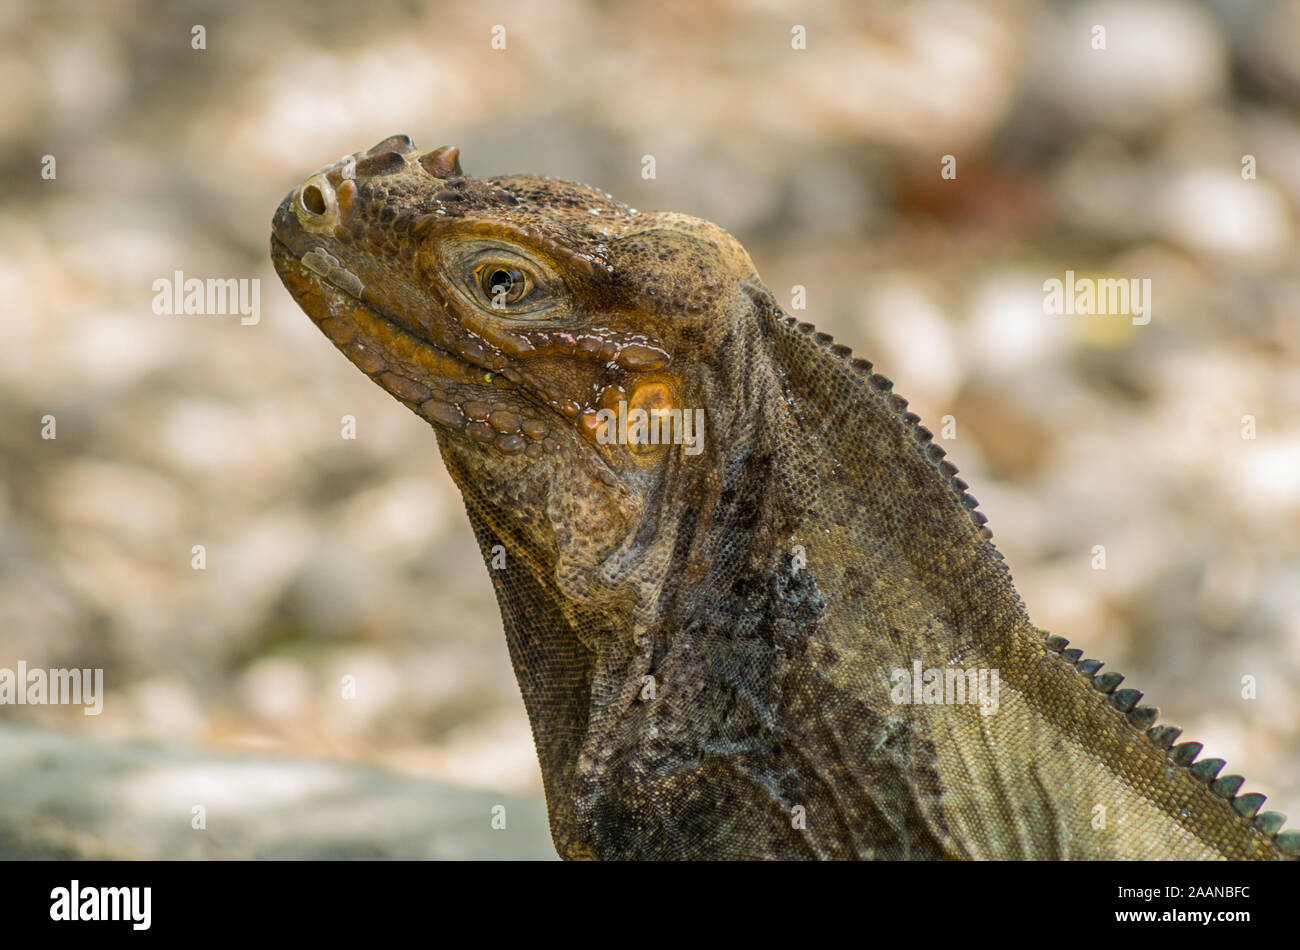 Reptilia Rhinoceros Iguana, close-up view, Lake Enriquillo, Dominican Republic Stock Photo